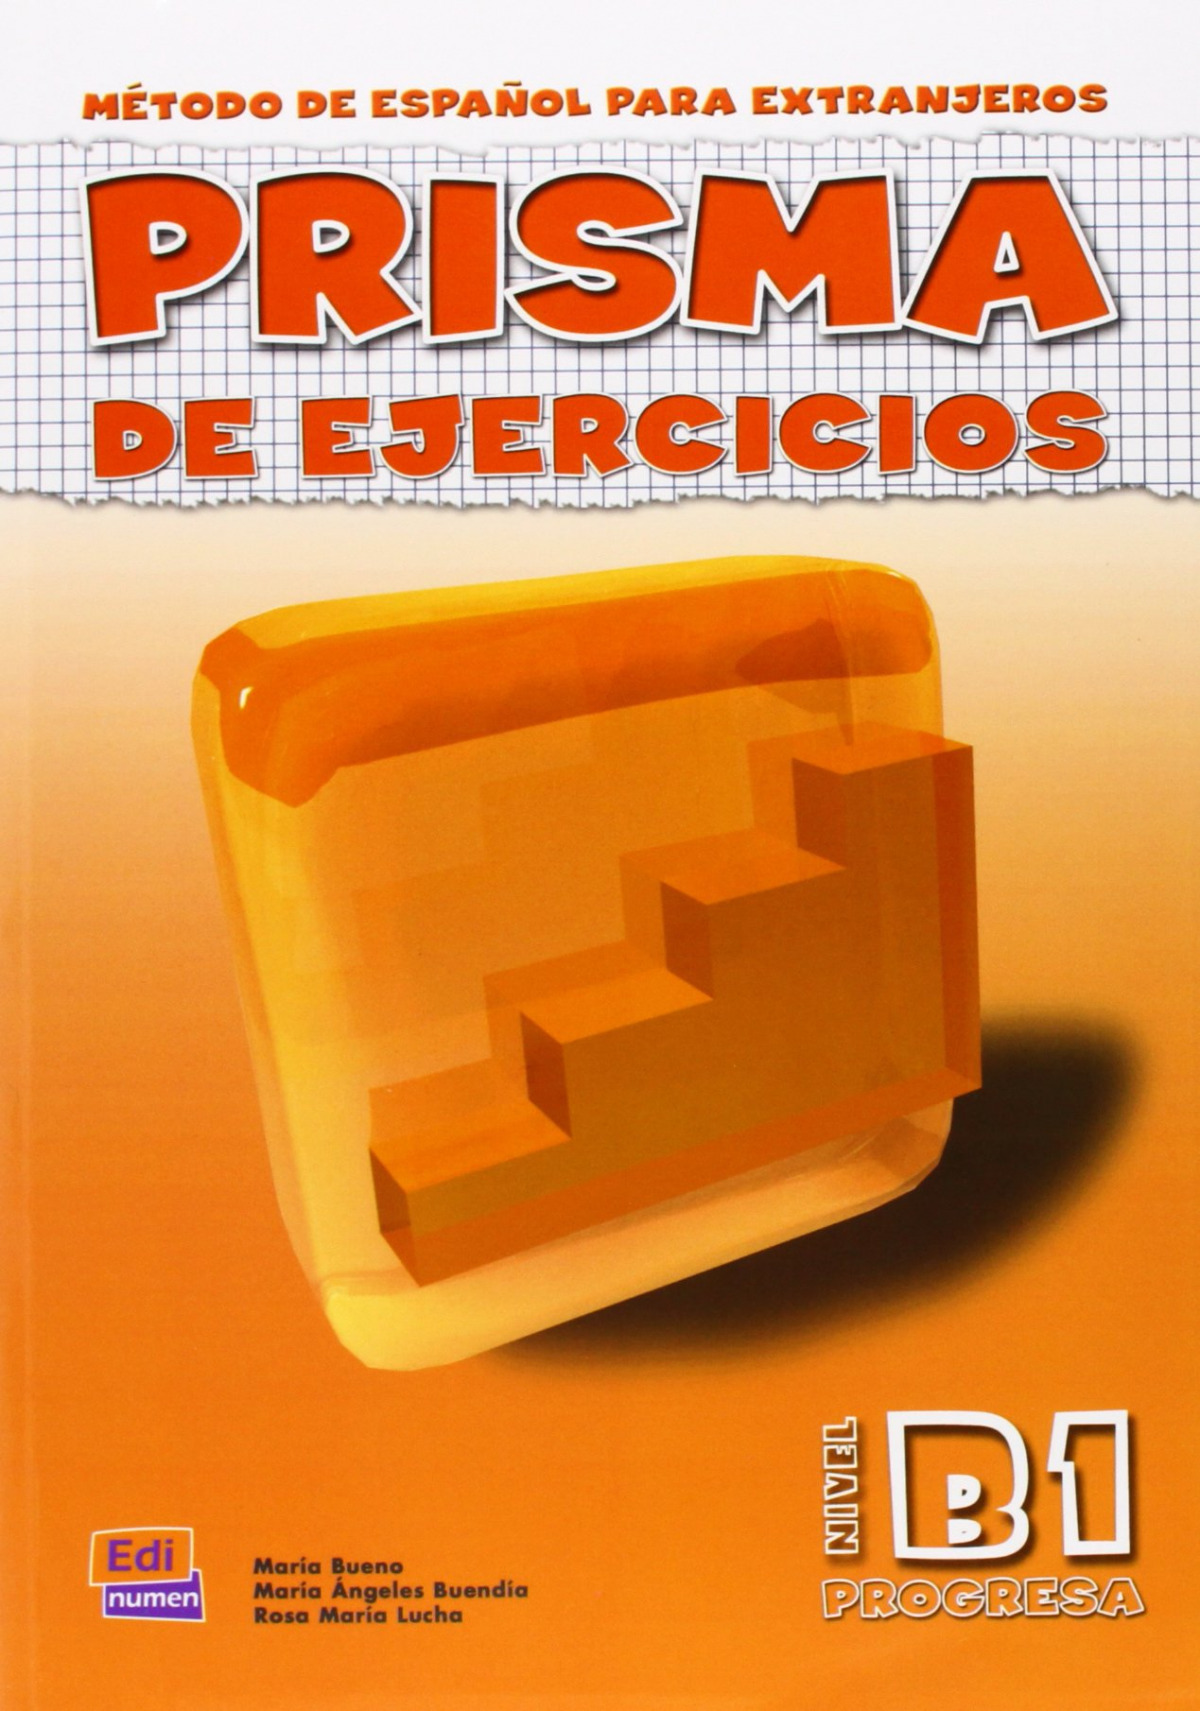 Prisma, método de español, nivel B1. Libro de ejercicios - Buendía Perni, María Angeles / Bueno Olivares, María / Lucha Cuadros, Rosa María